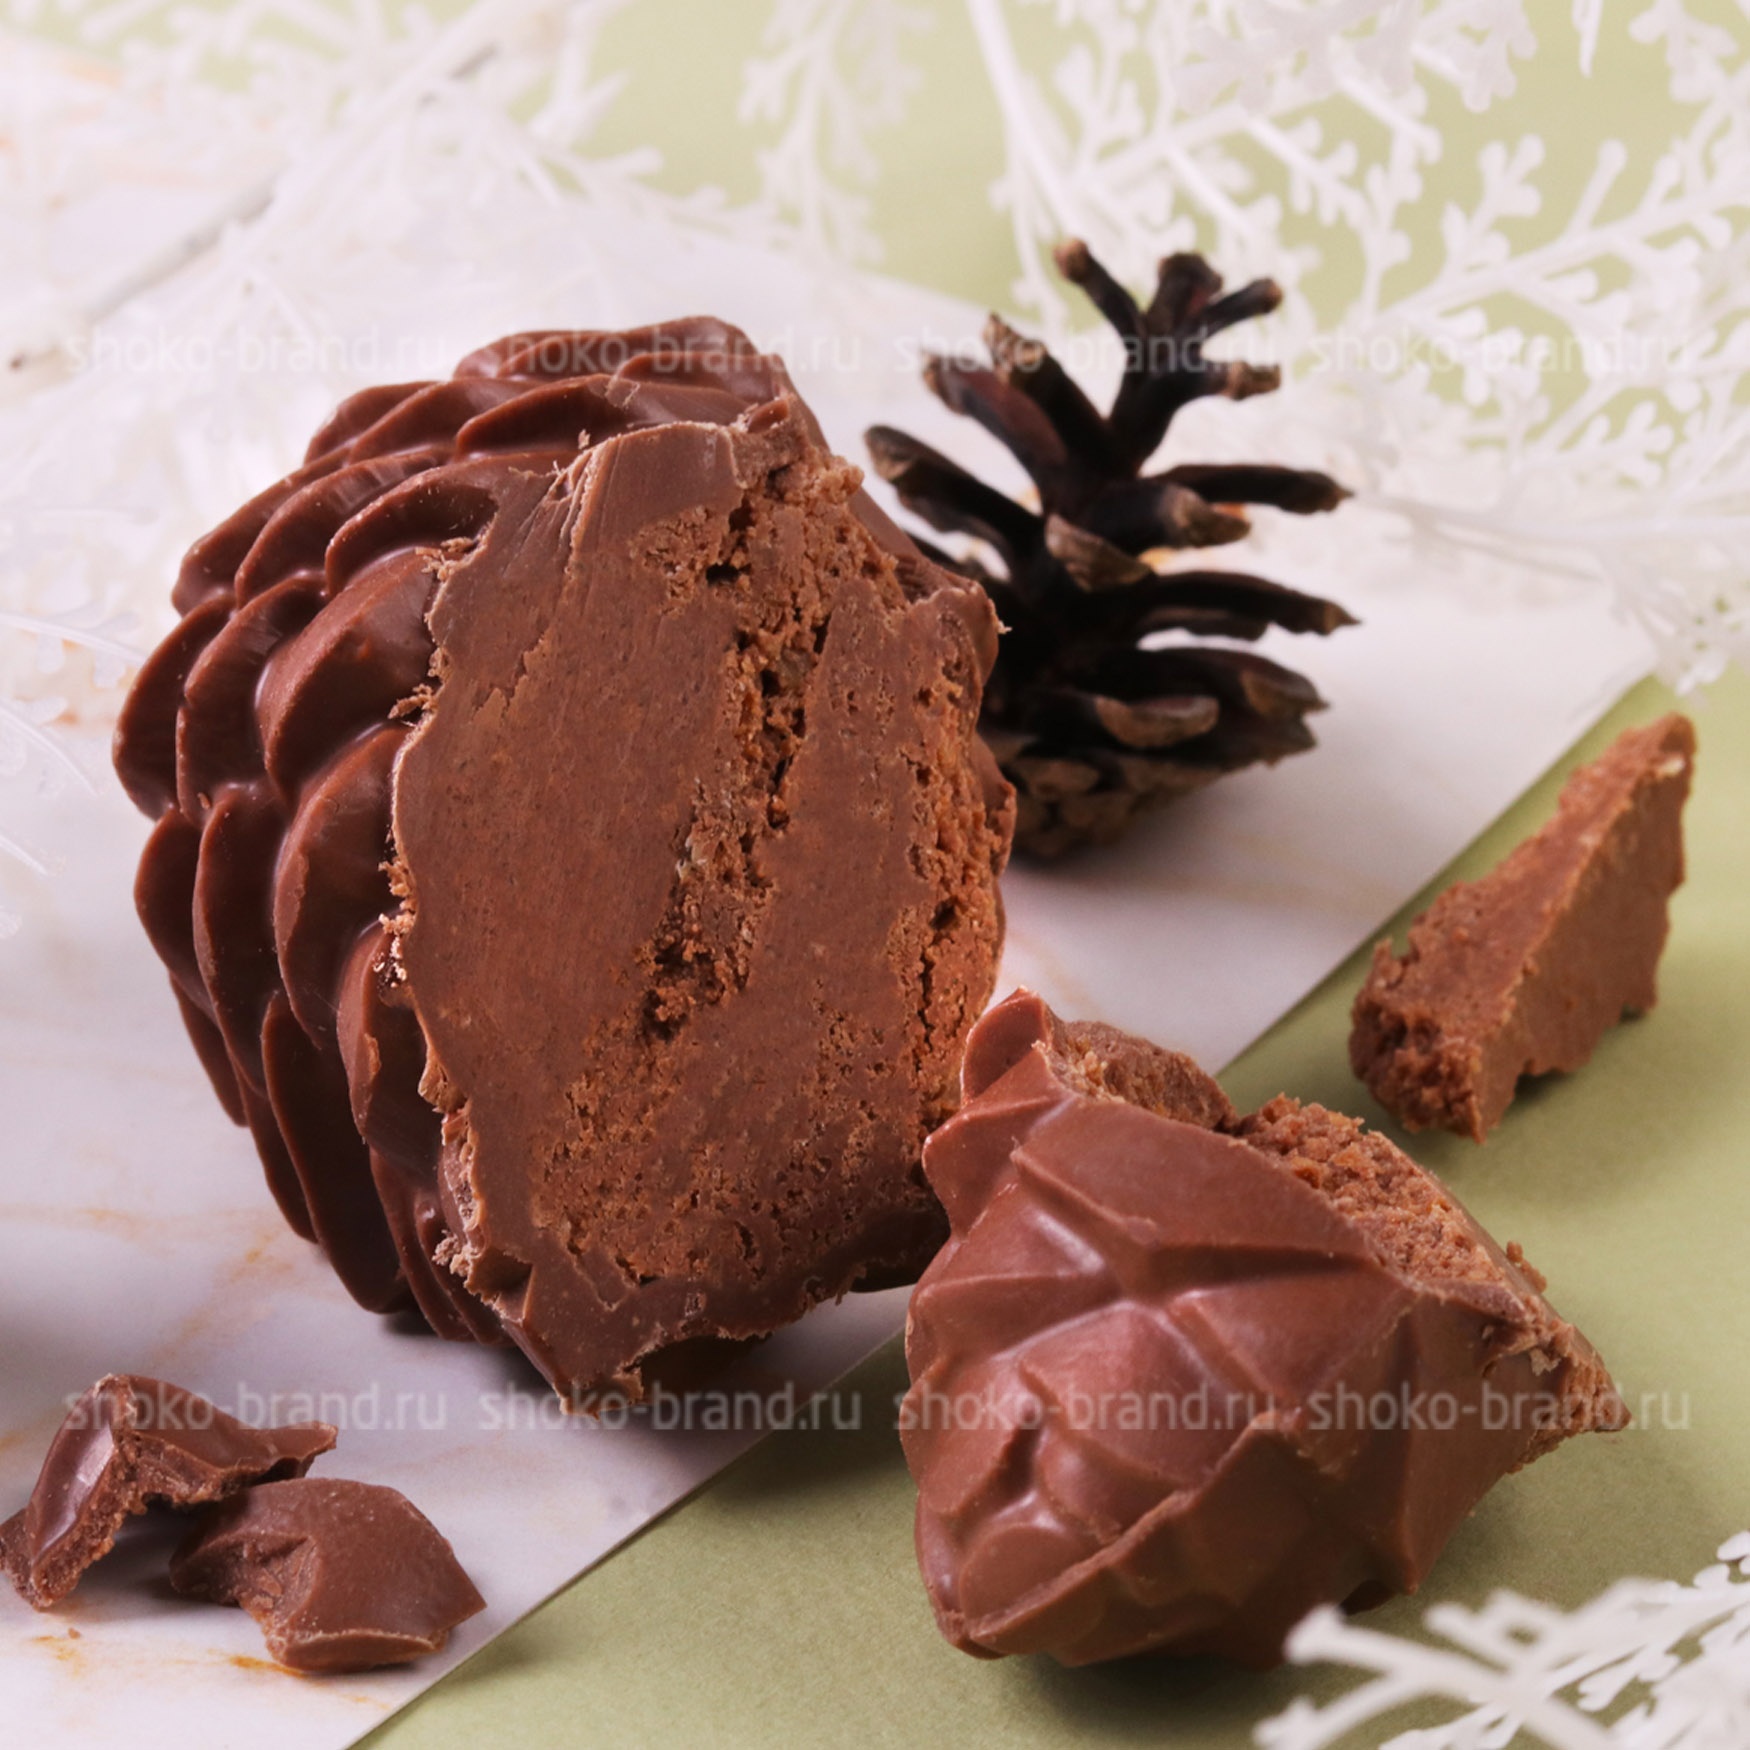 Шоколадная шишка с кедровыми орешками абаканские сладости. Шоколадная шишка. Шоколад с шишками. Шишка в шоколаде. Шишки из шоколада.